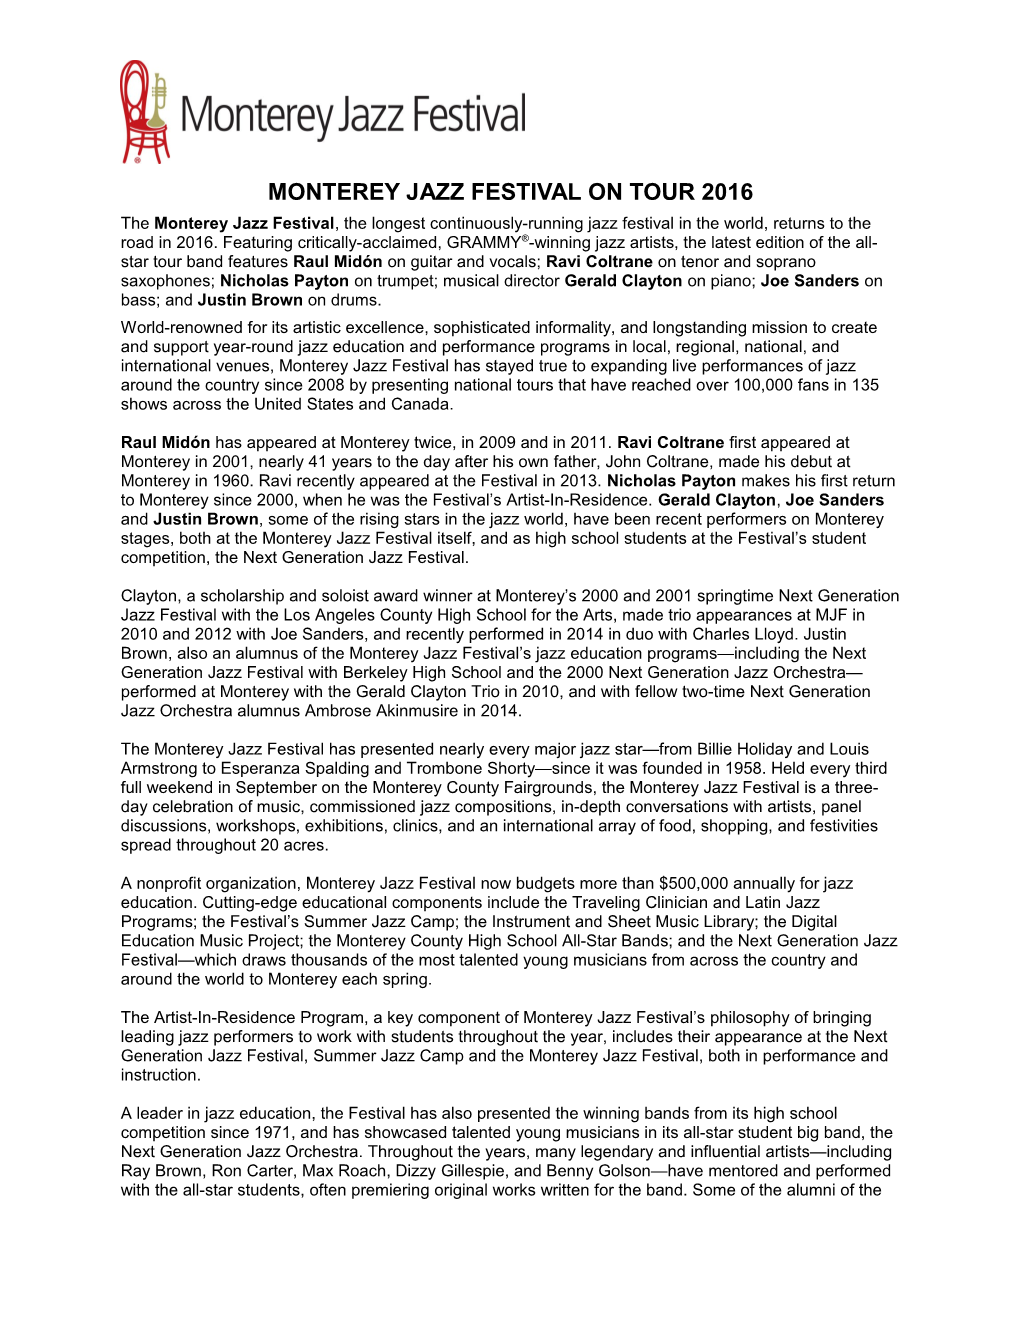 Monterey Jazz Festival on Tour 2016